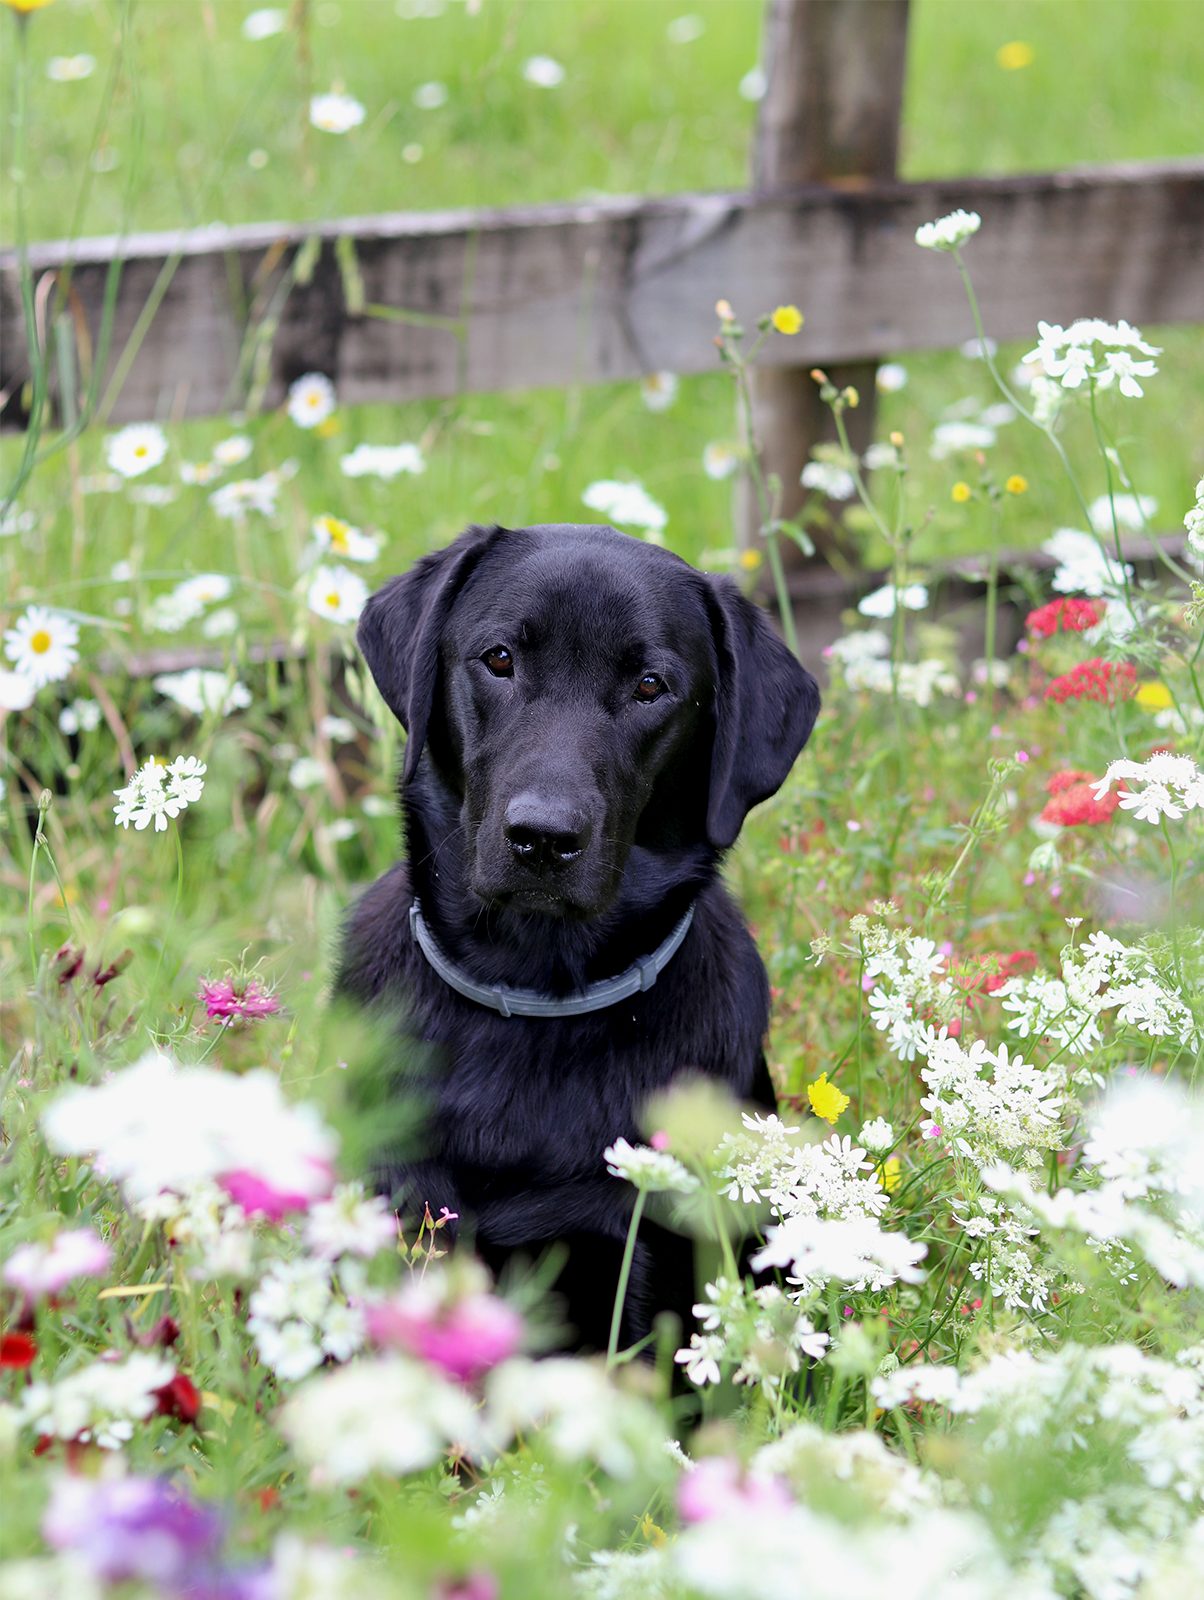 Black labrador in a flower field